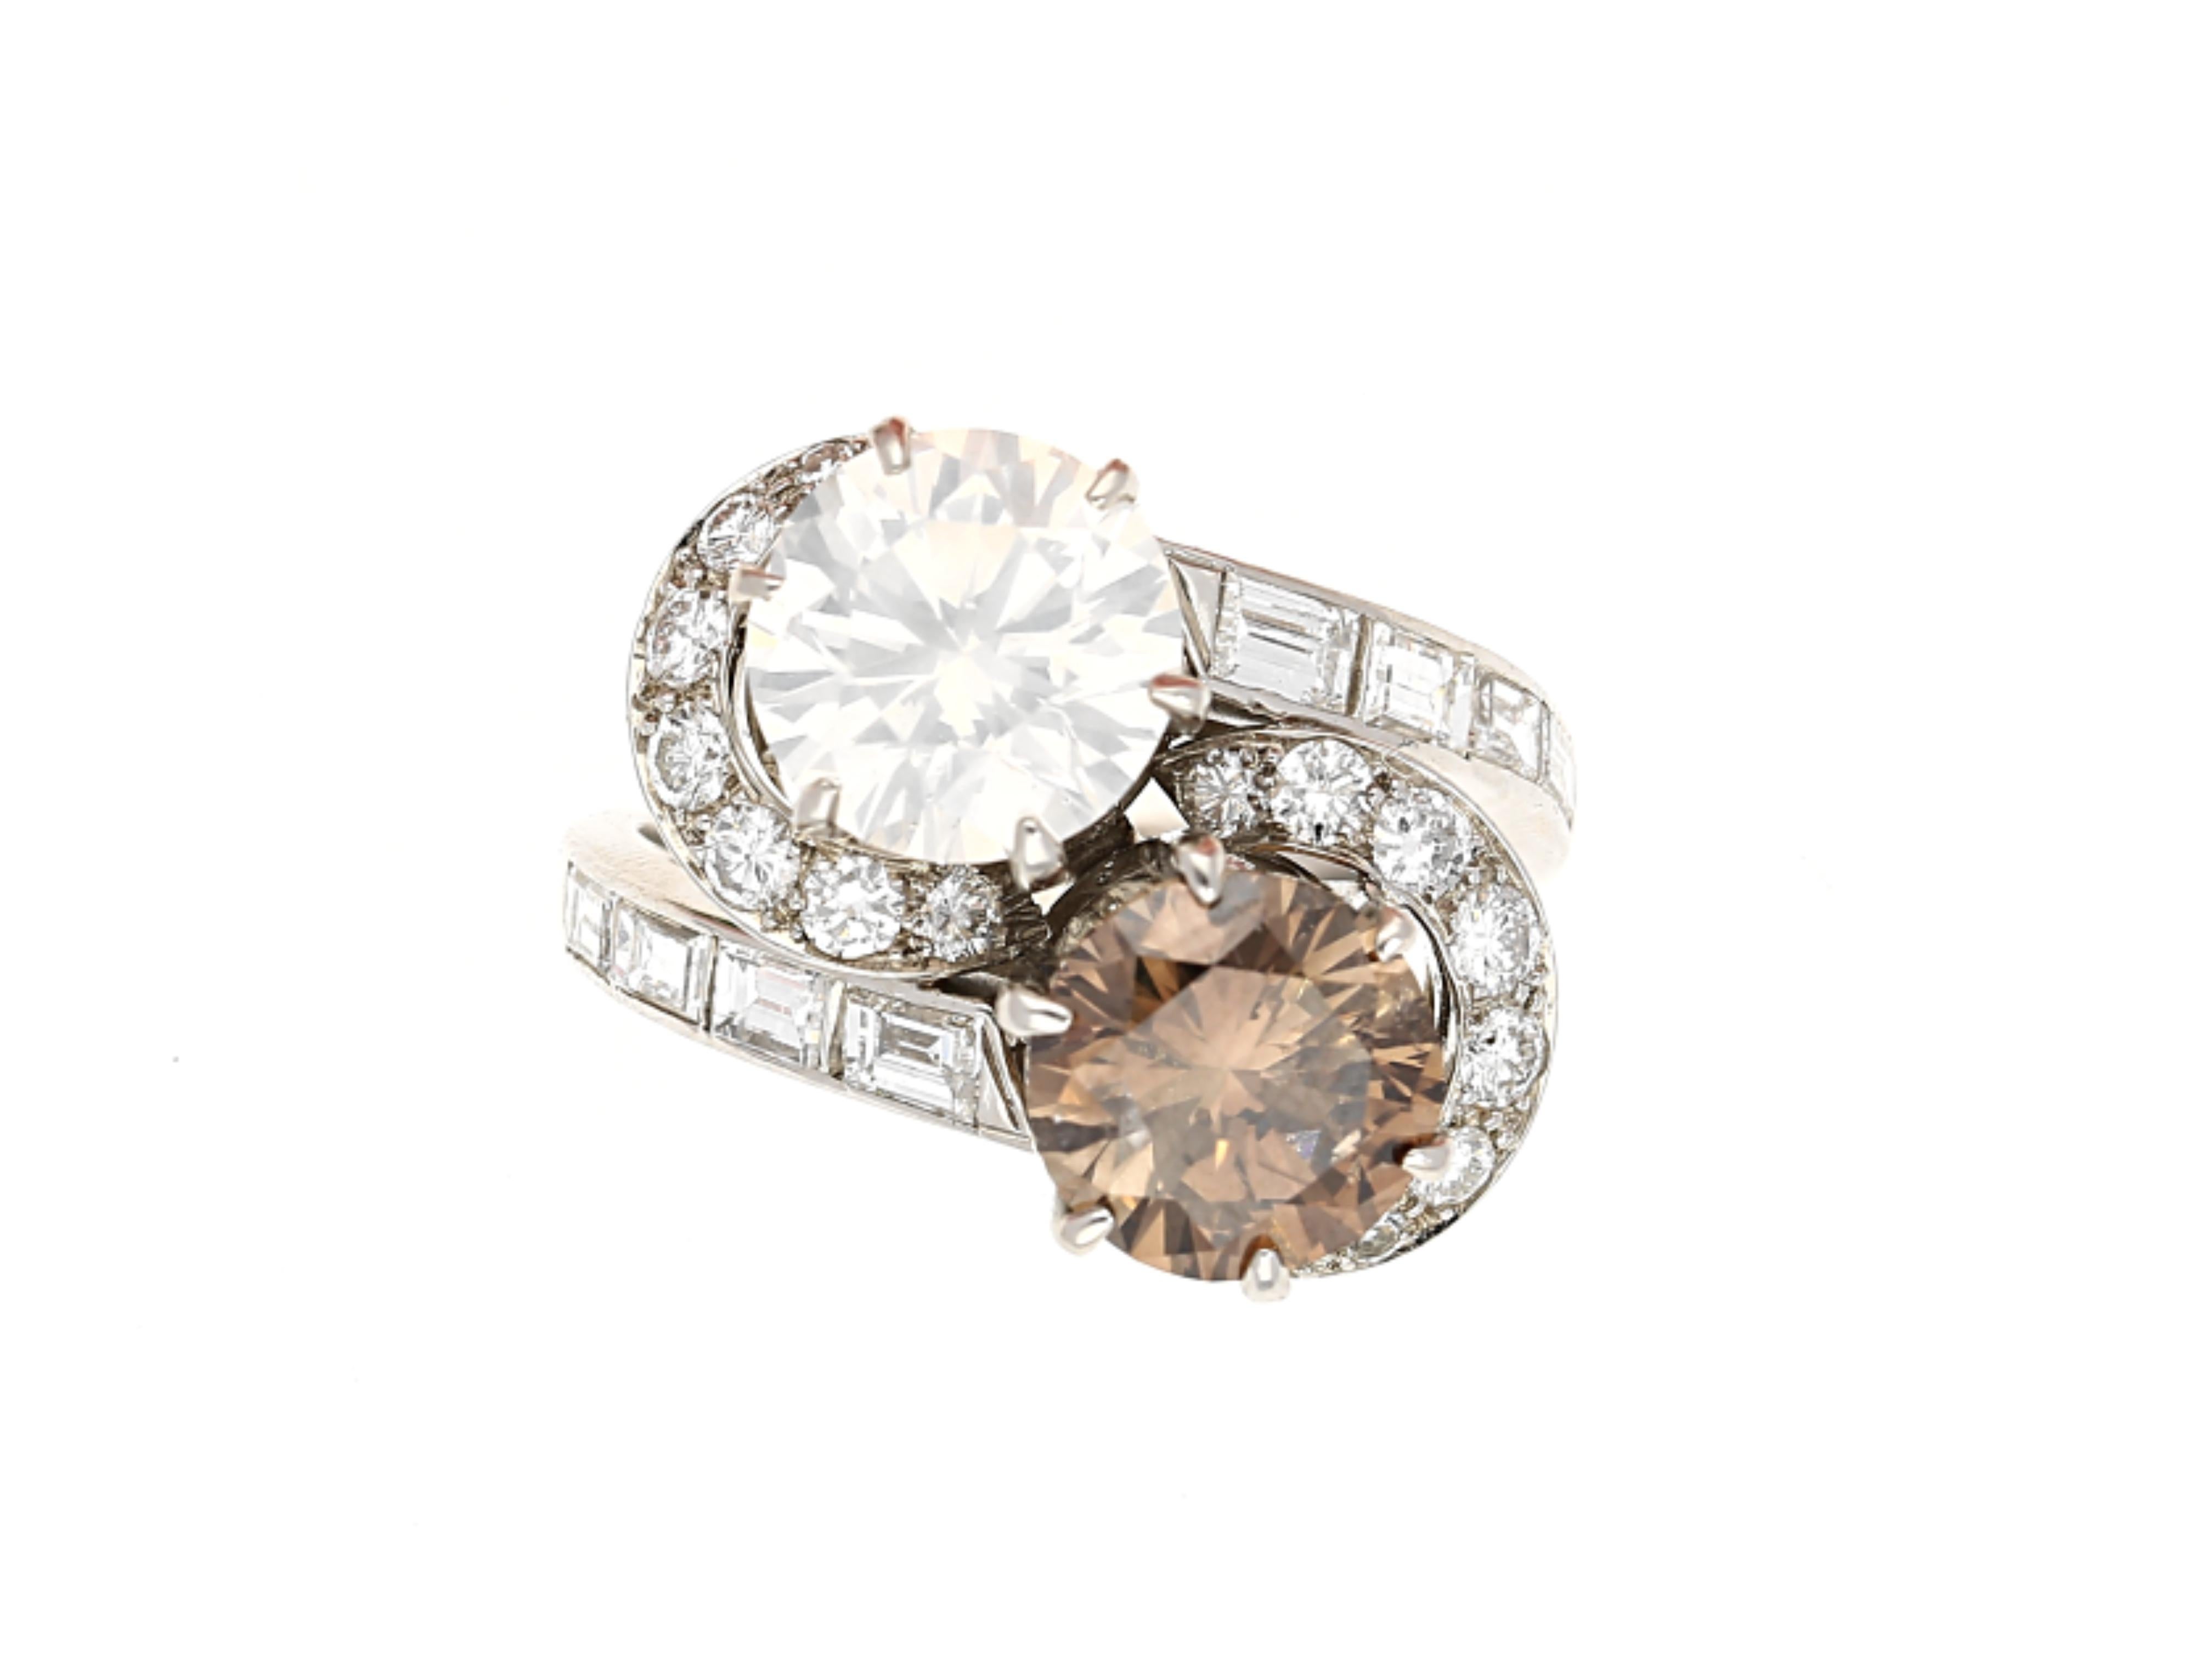 Erleben Sie den Inbegriff von Luxus und Eleganz - einen GIA-zertifizierten Toi et Moi-Ring mit braunen und weißen Diamanten im Rundschliff, gefasst in Platin. Dieser exquisite Ring ist ein wahres Meisterwerk, das mit unvergleichlichem Geschick und